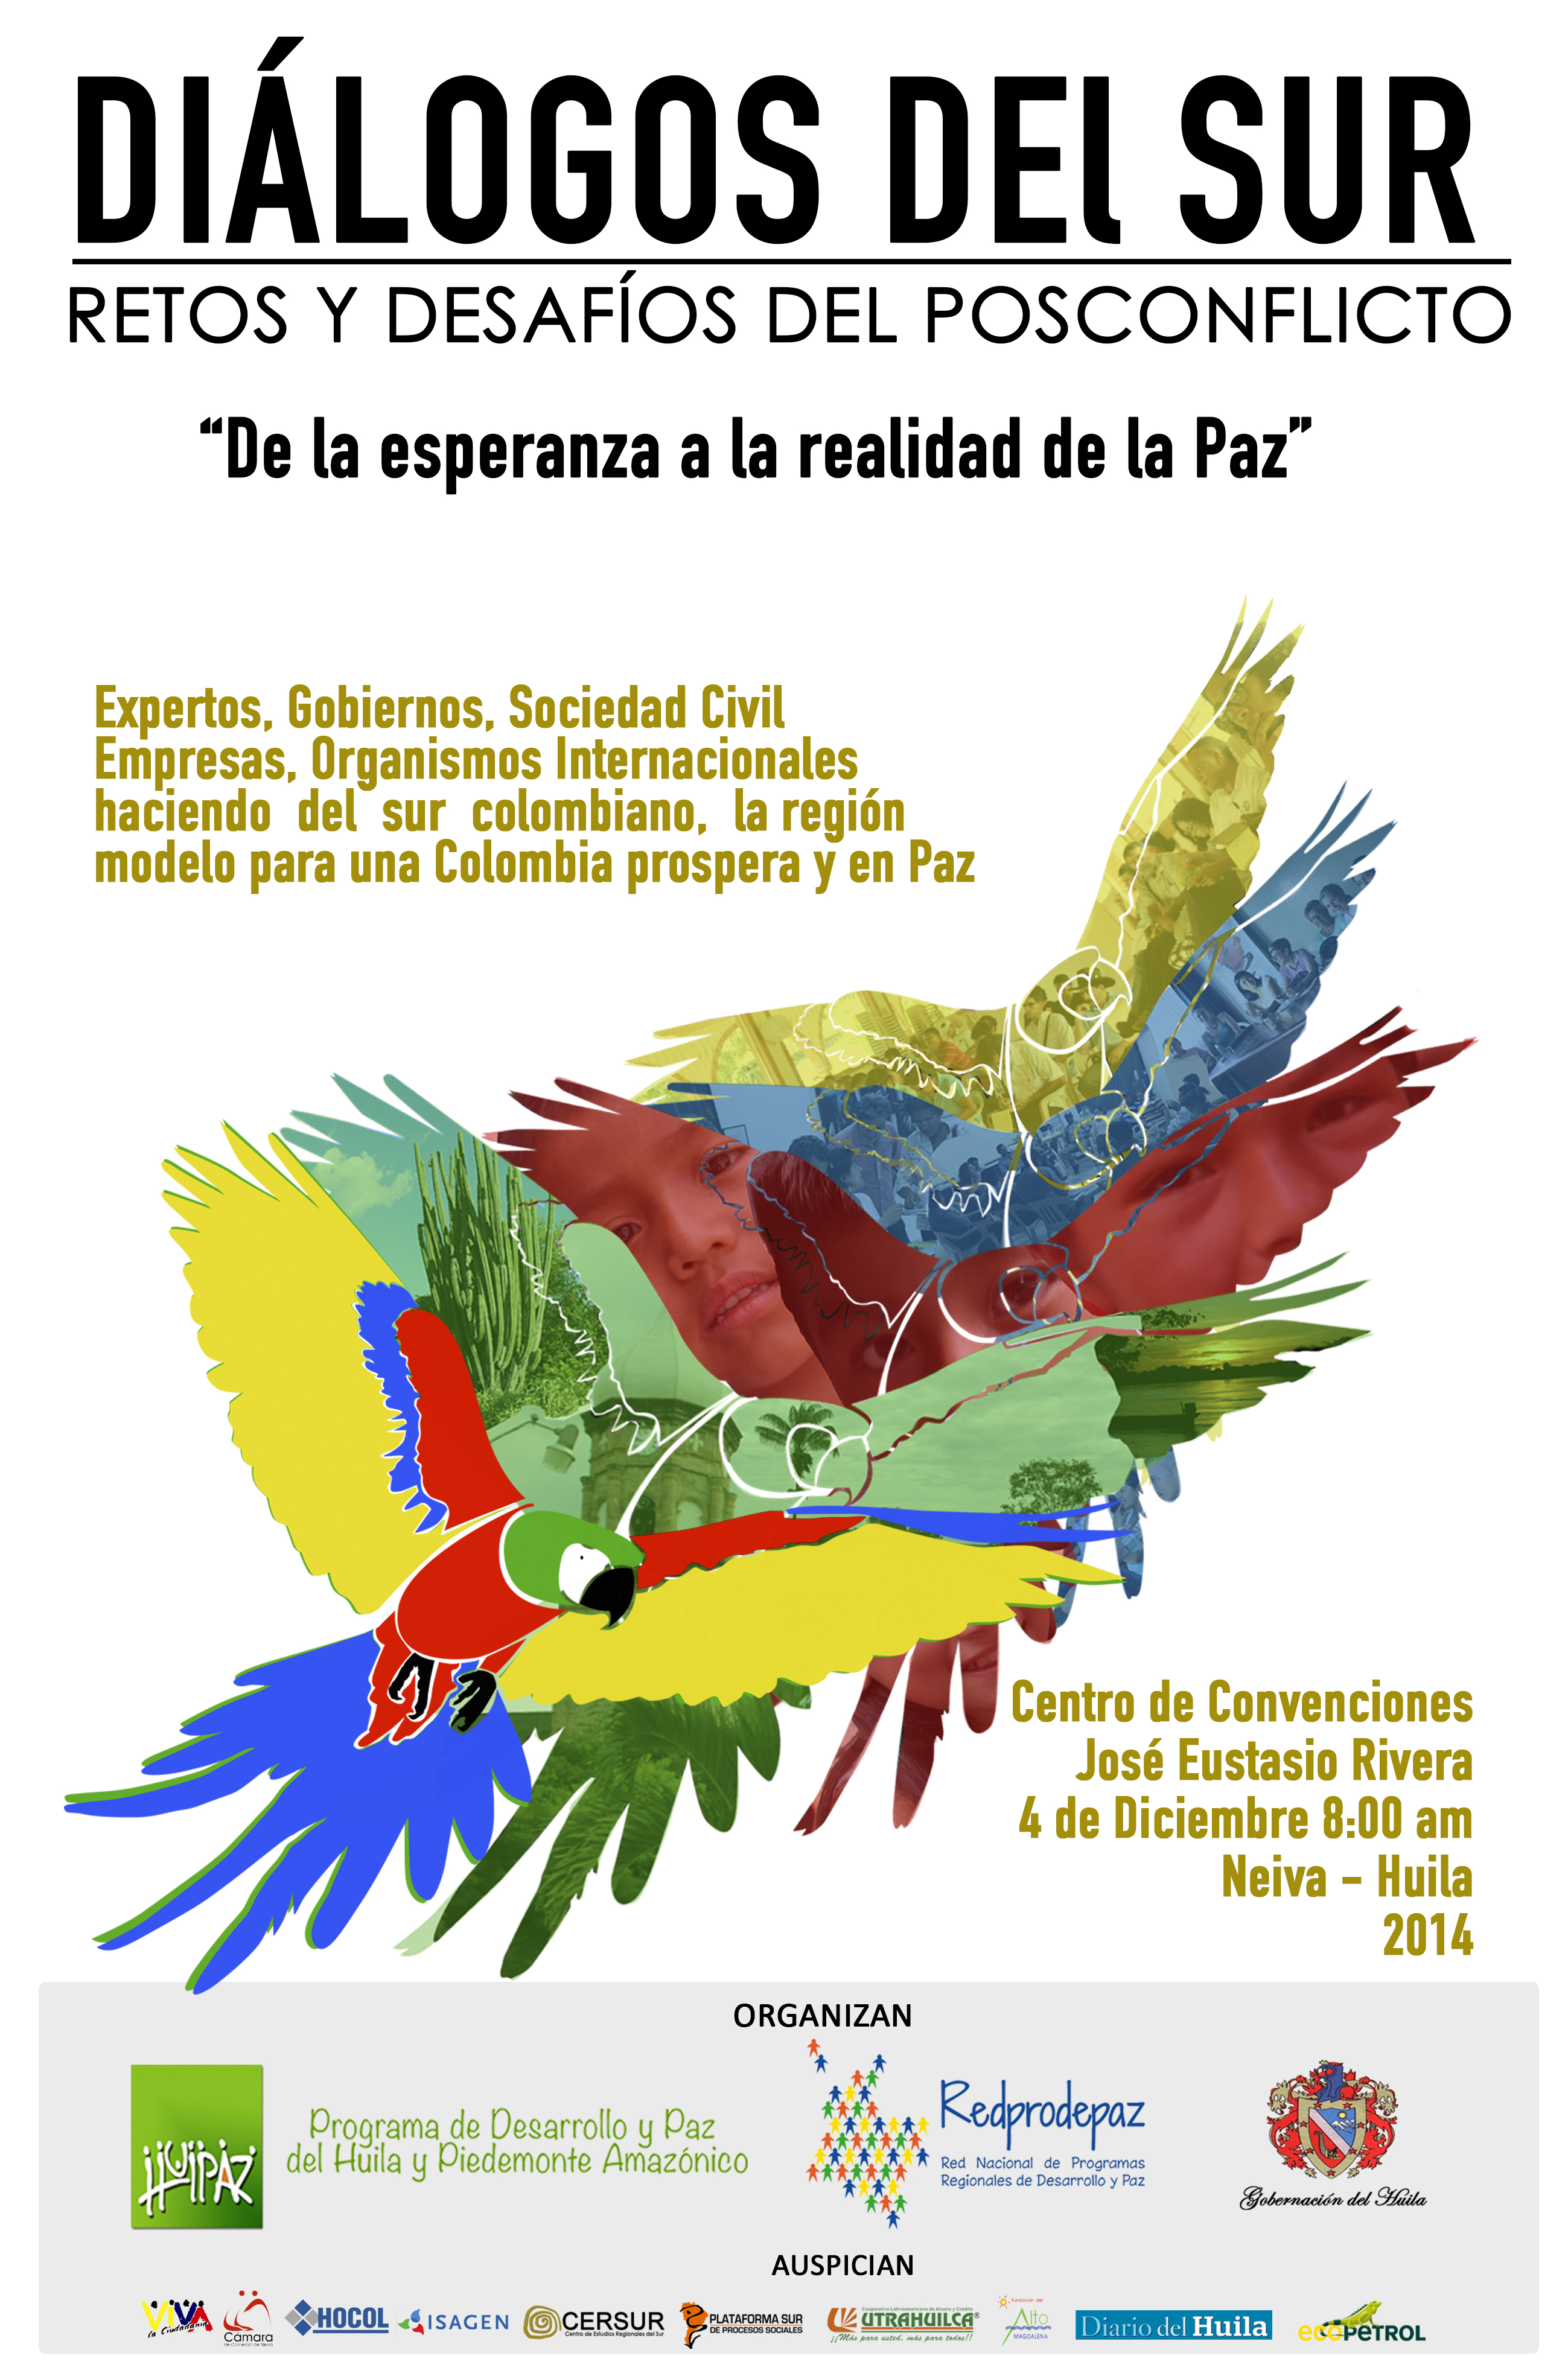 Imagen alusiva a Diálogos del Sur